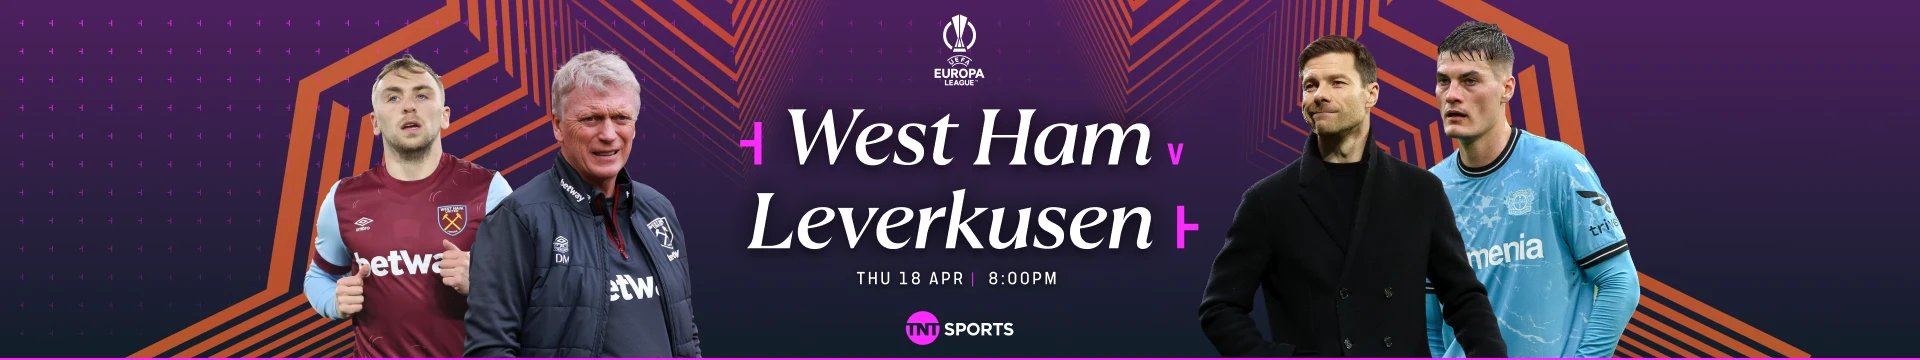 West Ham v Leverkusen Thursday 18 April at 8pm